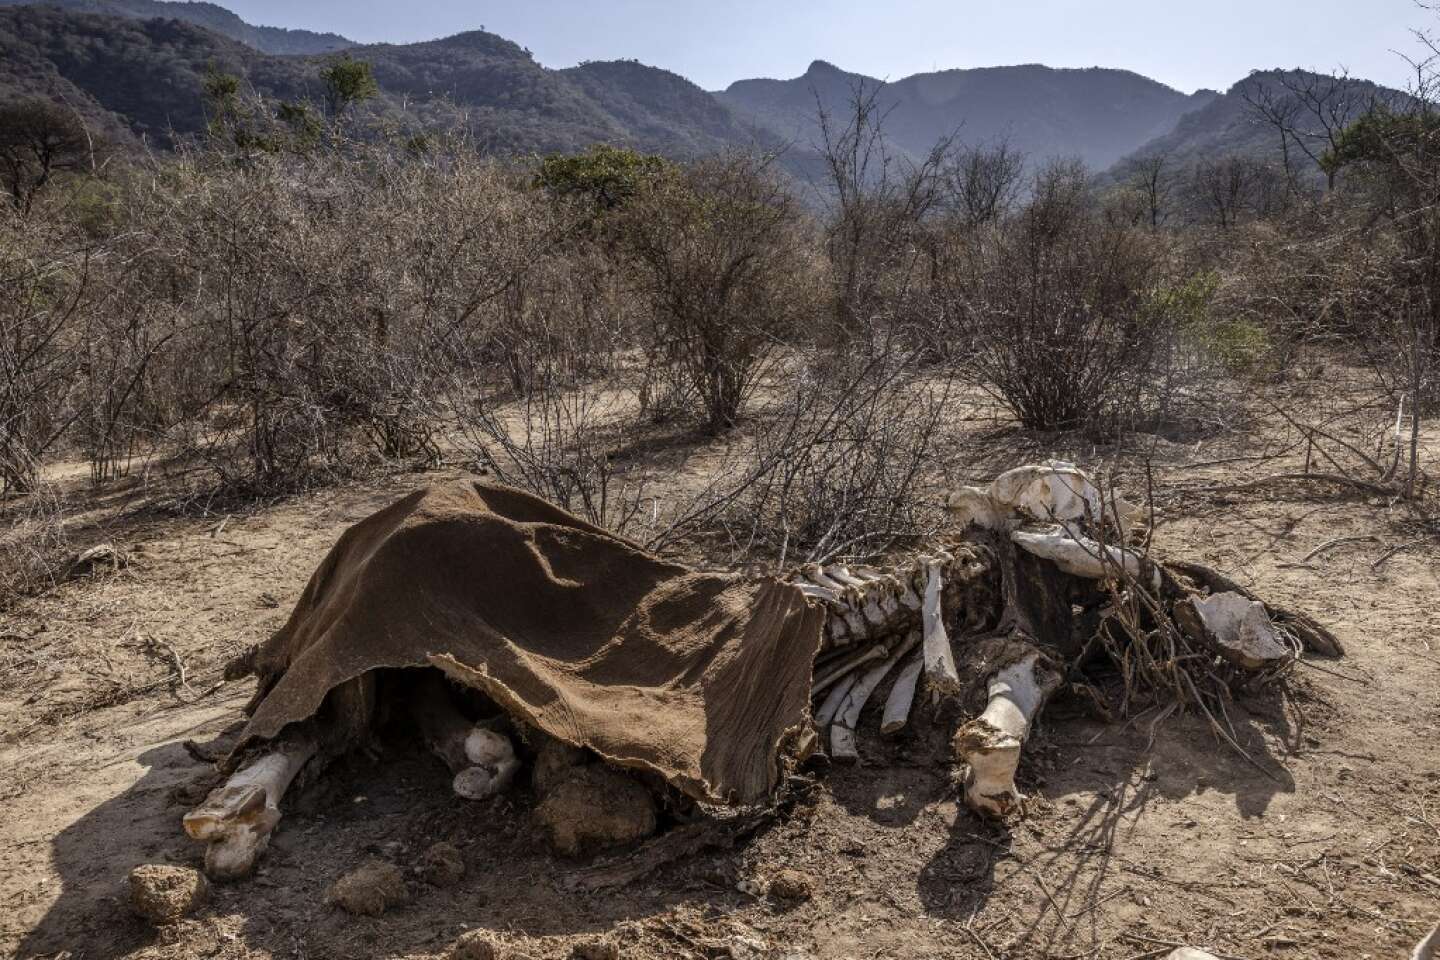 Au Kenya, plus de 200 éléphants morts en 9 mois à cause de la sécheresse